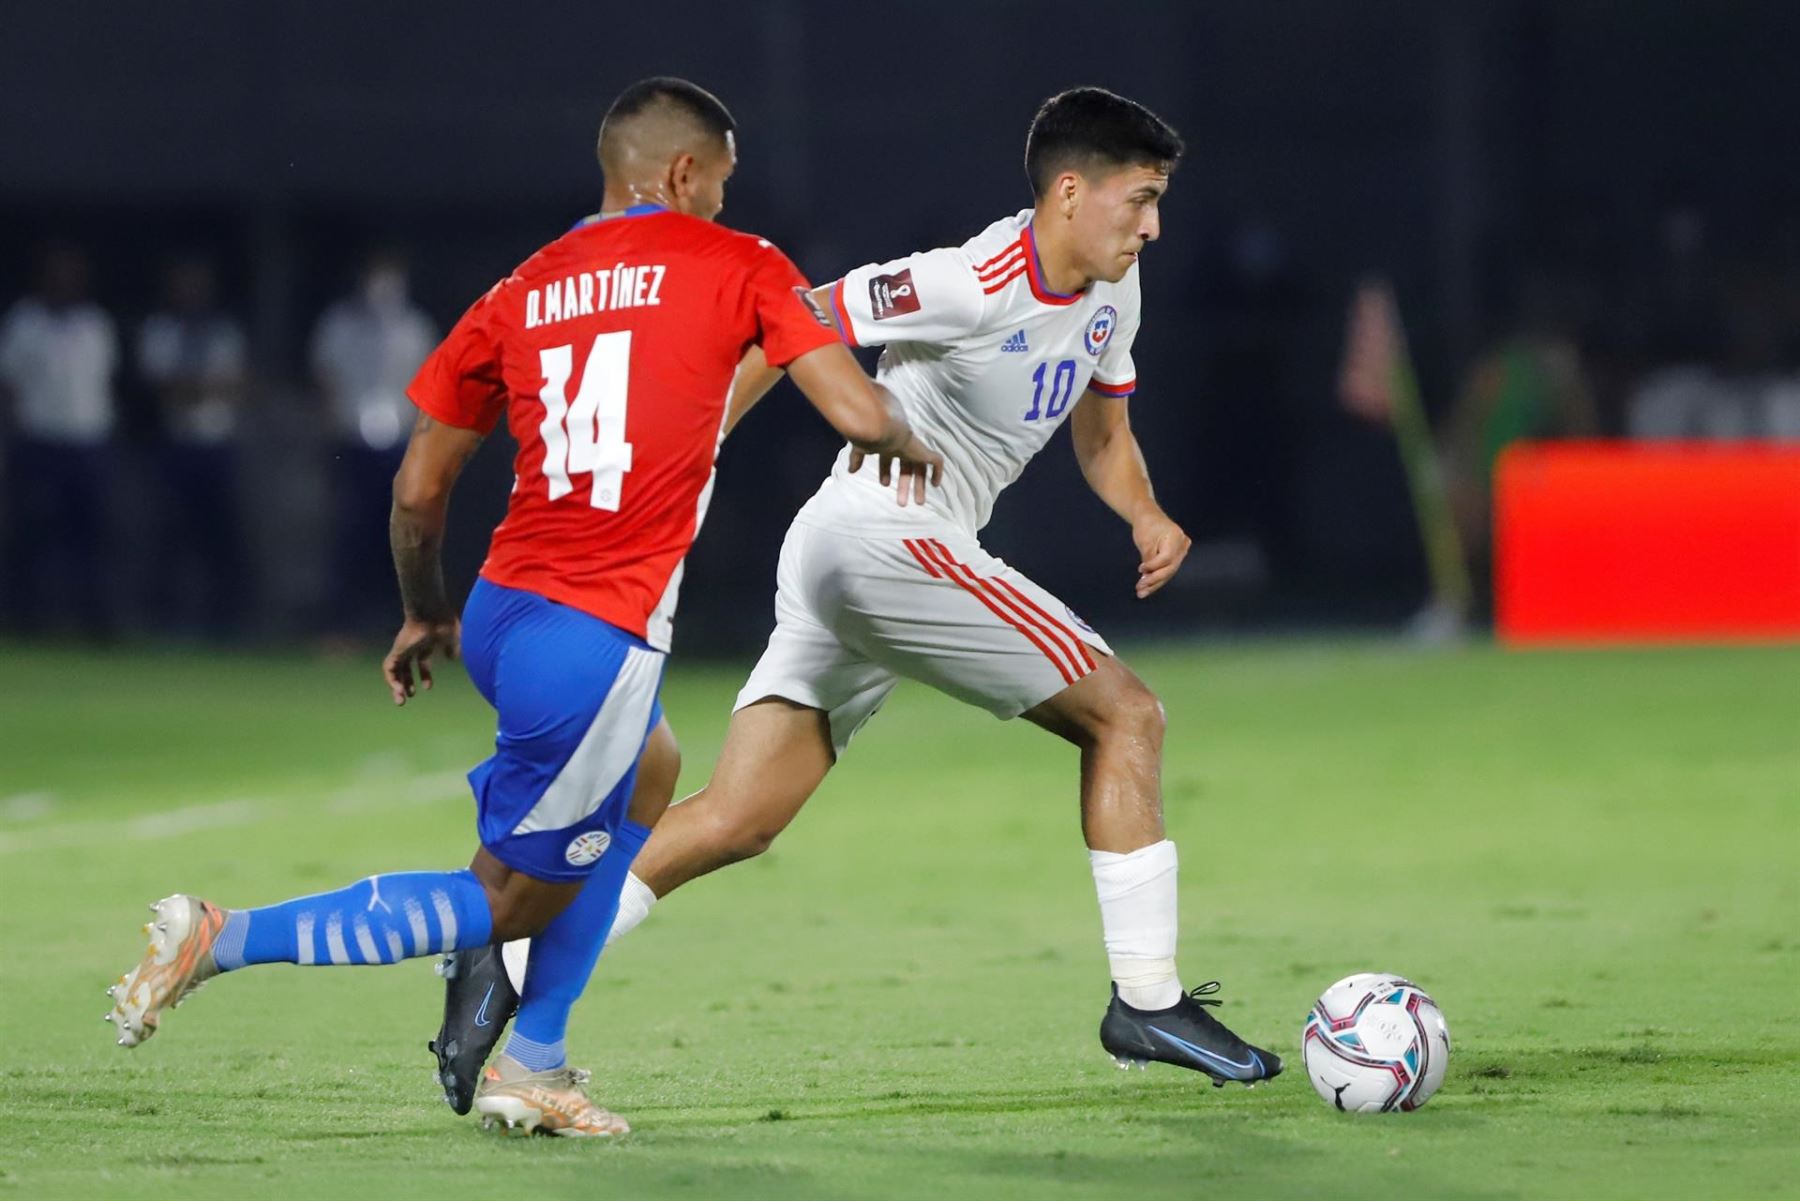 Catar 2022: Paraguay y Chile empatan sin goles en el primer tiempo